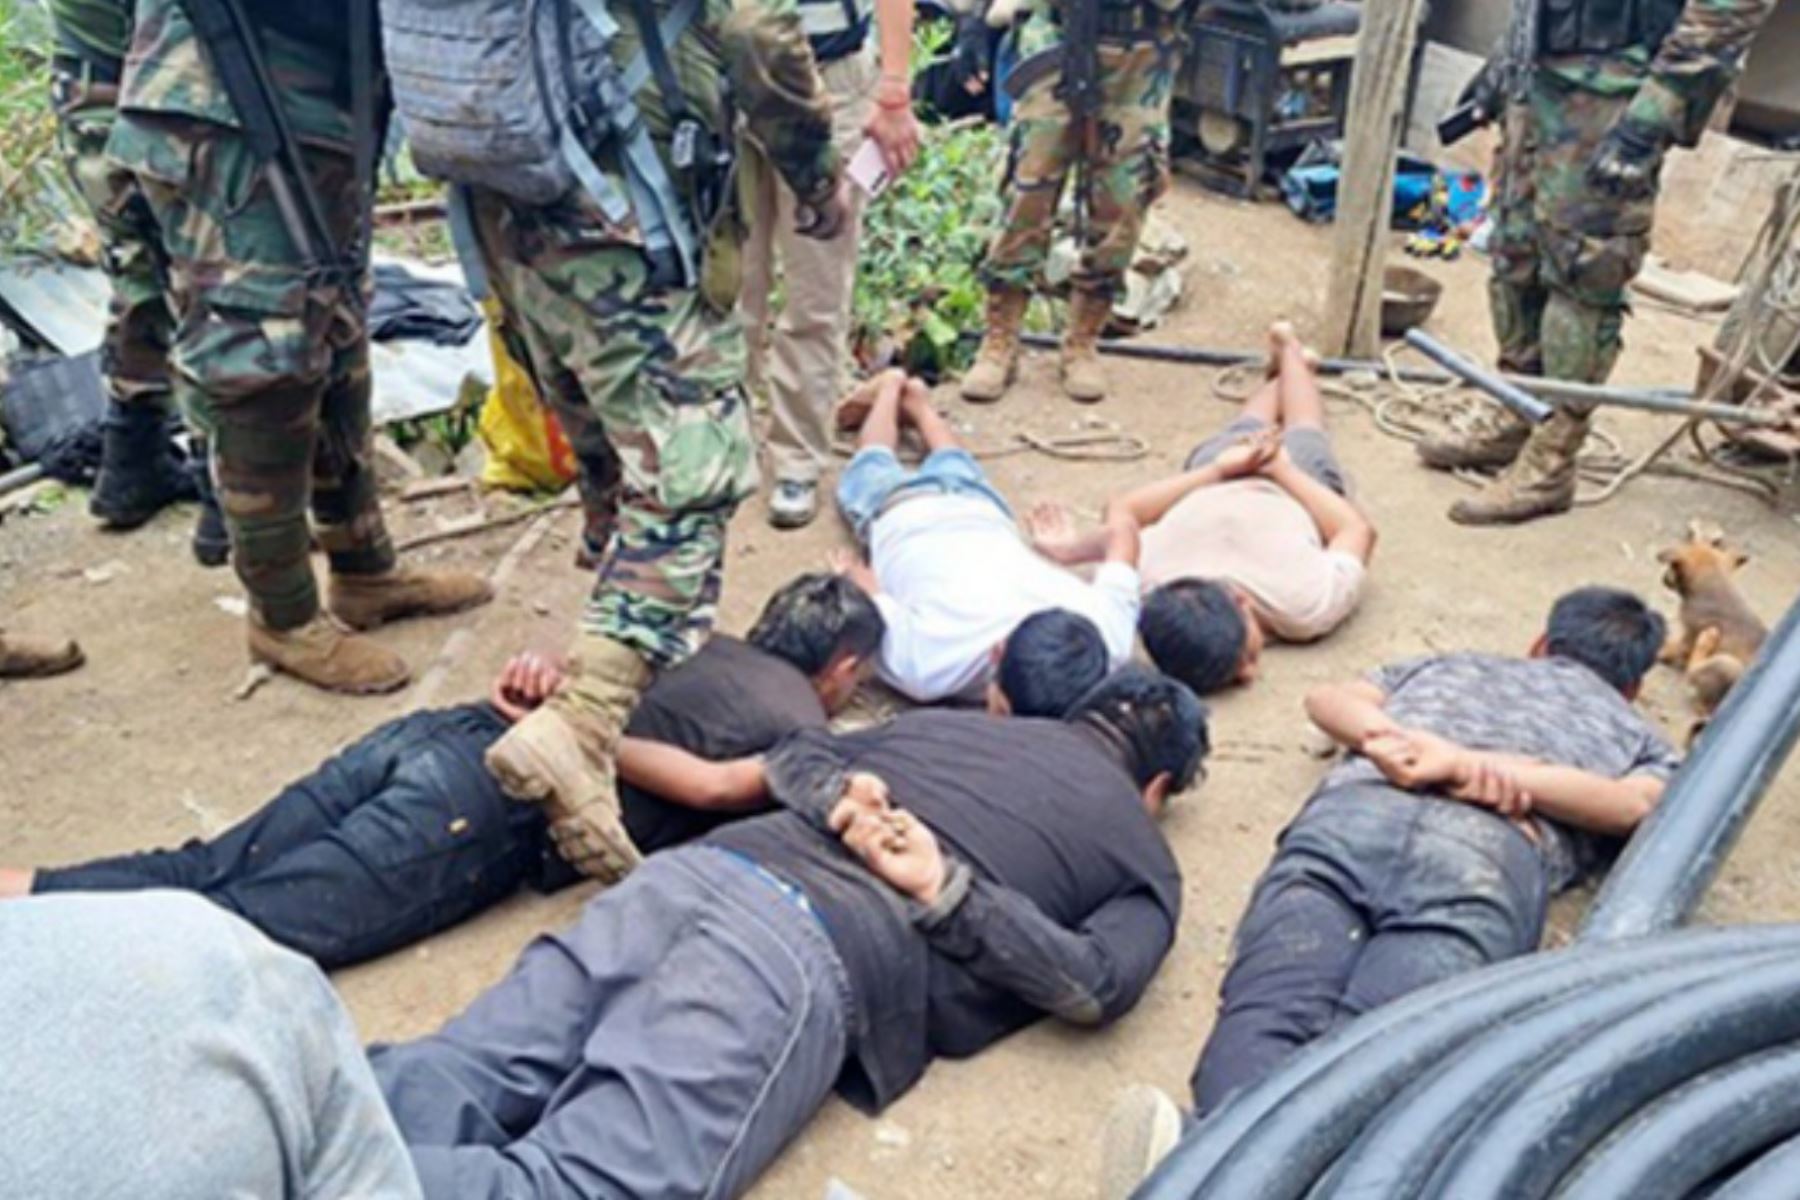 Policía detuvo a 14 personas en un campamento donde extraían oro de manera ilegal en la provincia de Pataz, La Libertad. ANDINA/Difusión